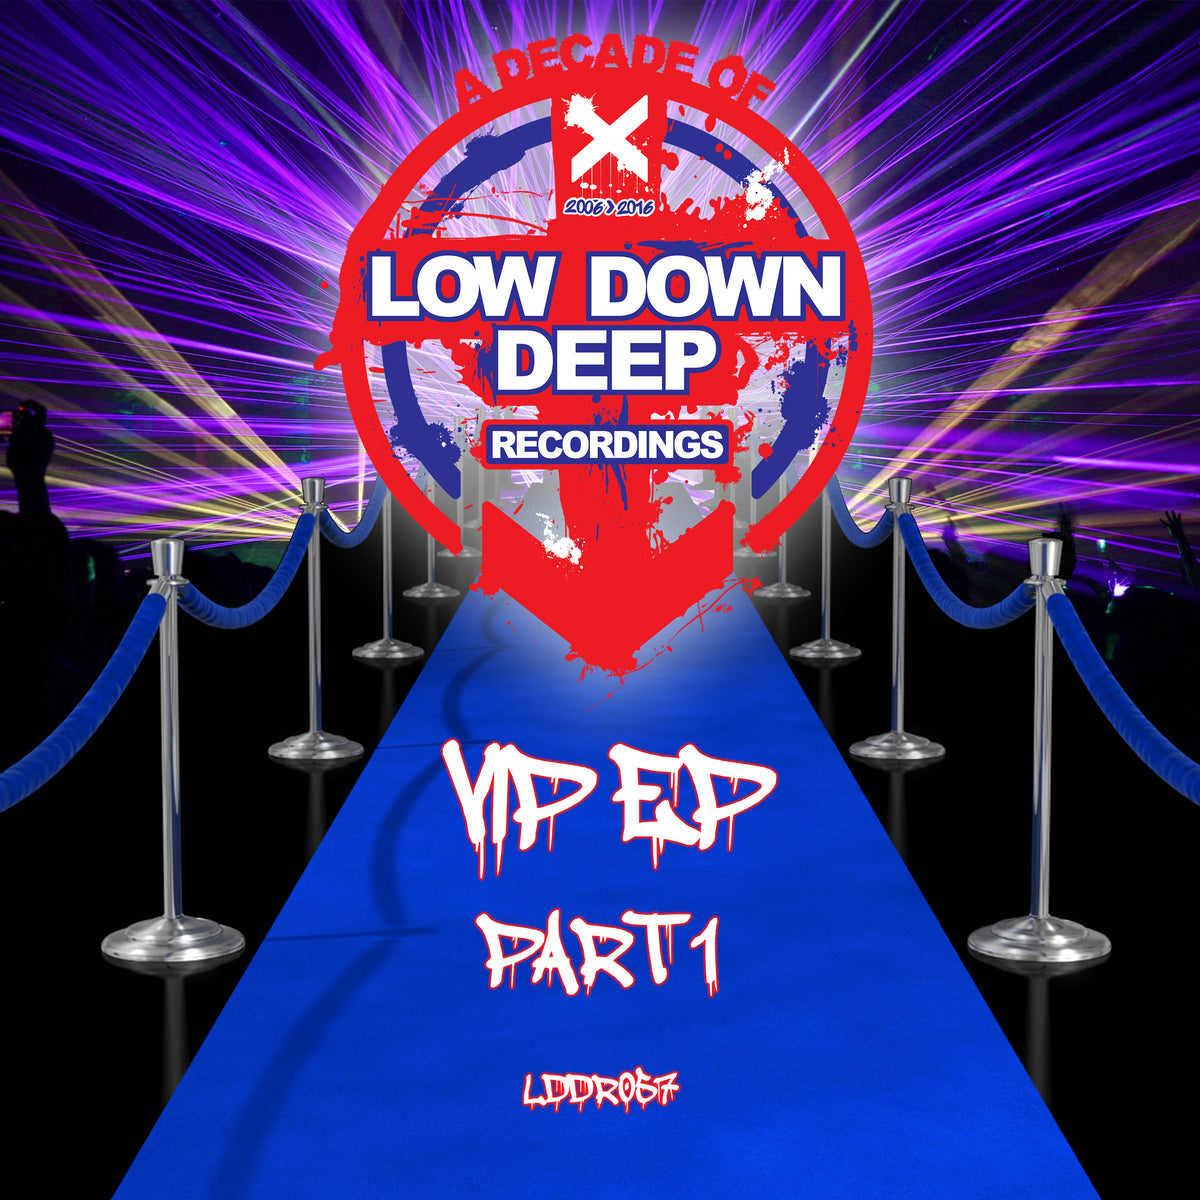 LDD 057 'VIP EP' Part 1